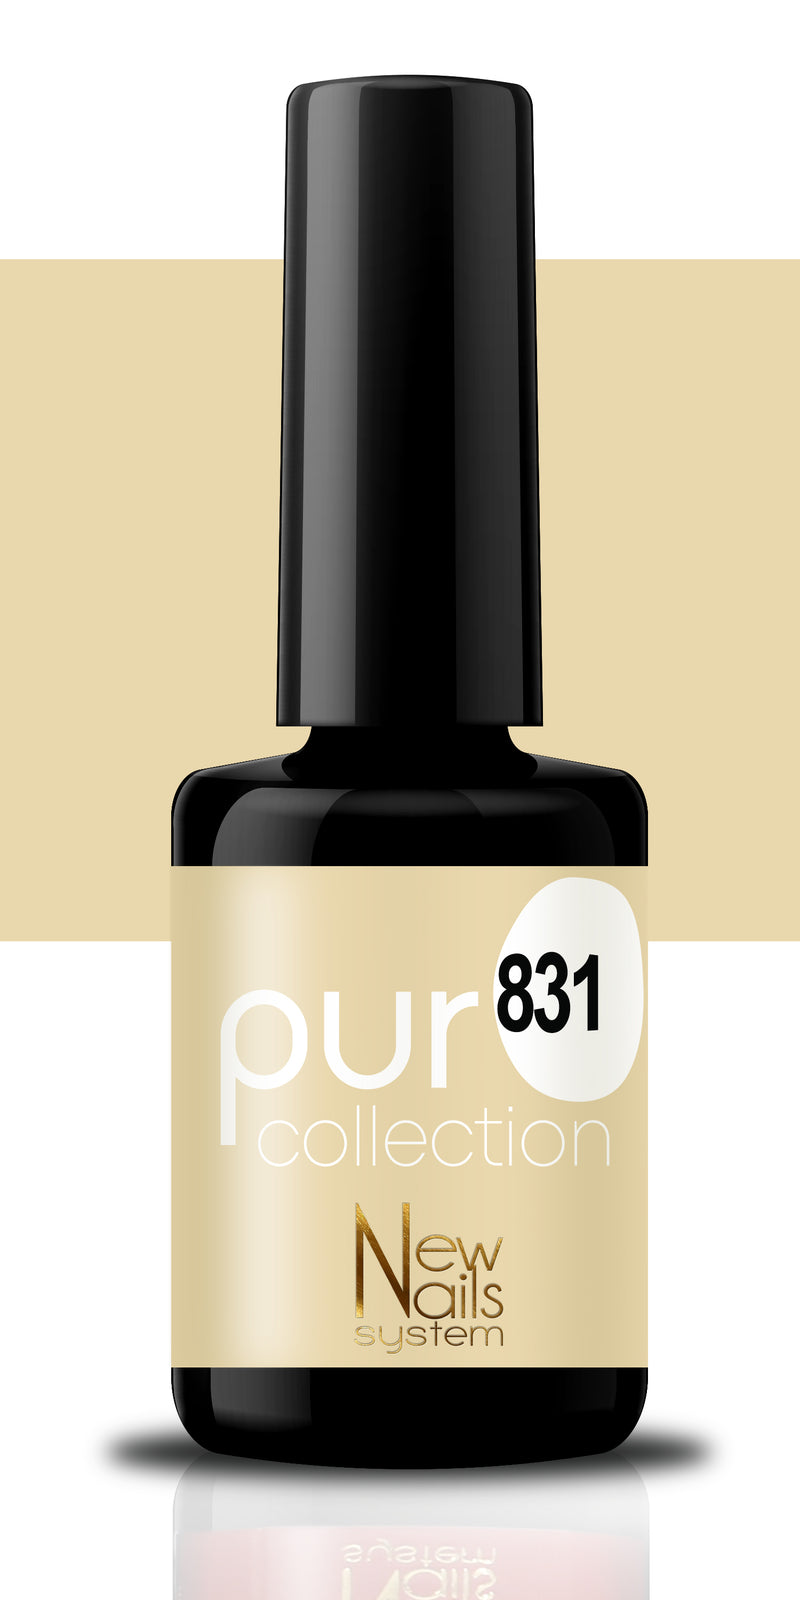 Puro collection 831 colore Fshion Nude semipermanente 5ml